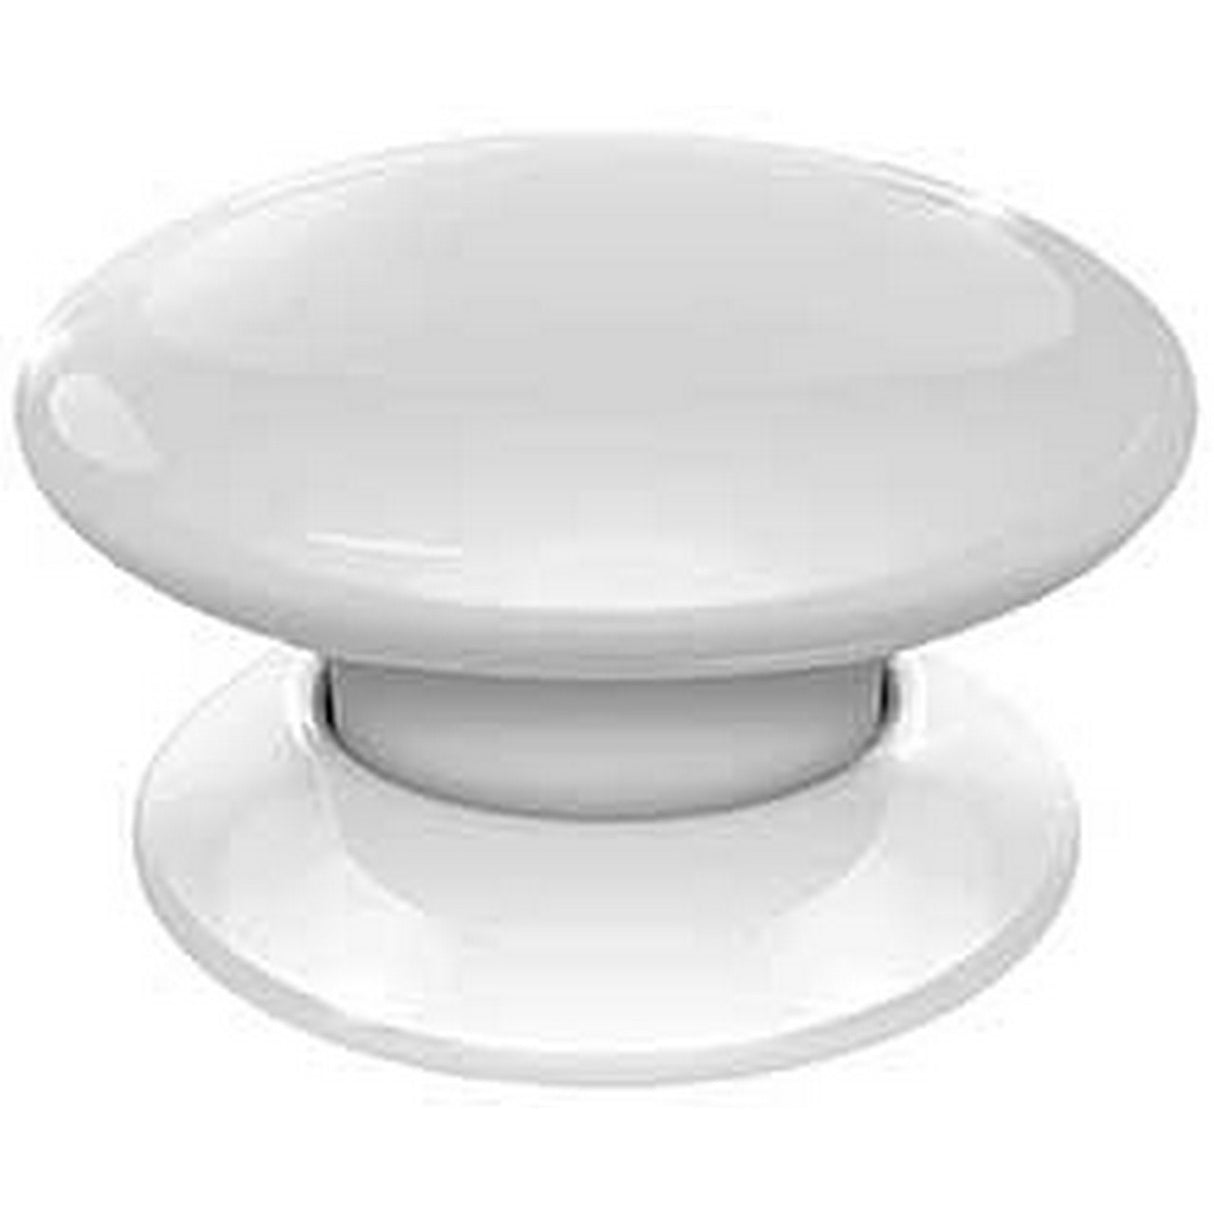 Fibaro The Button | Smart Home Control Device White